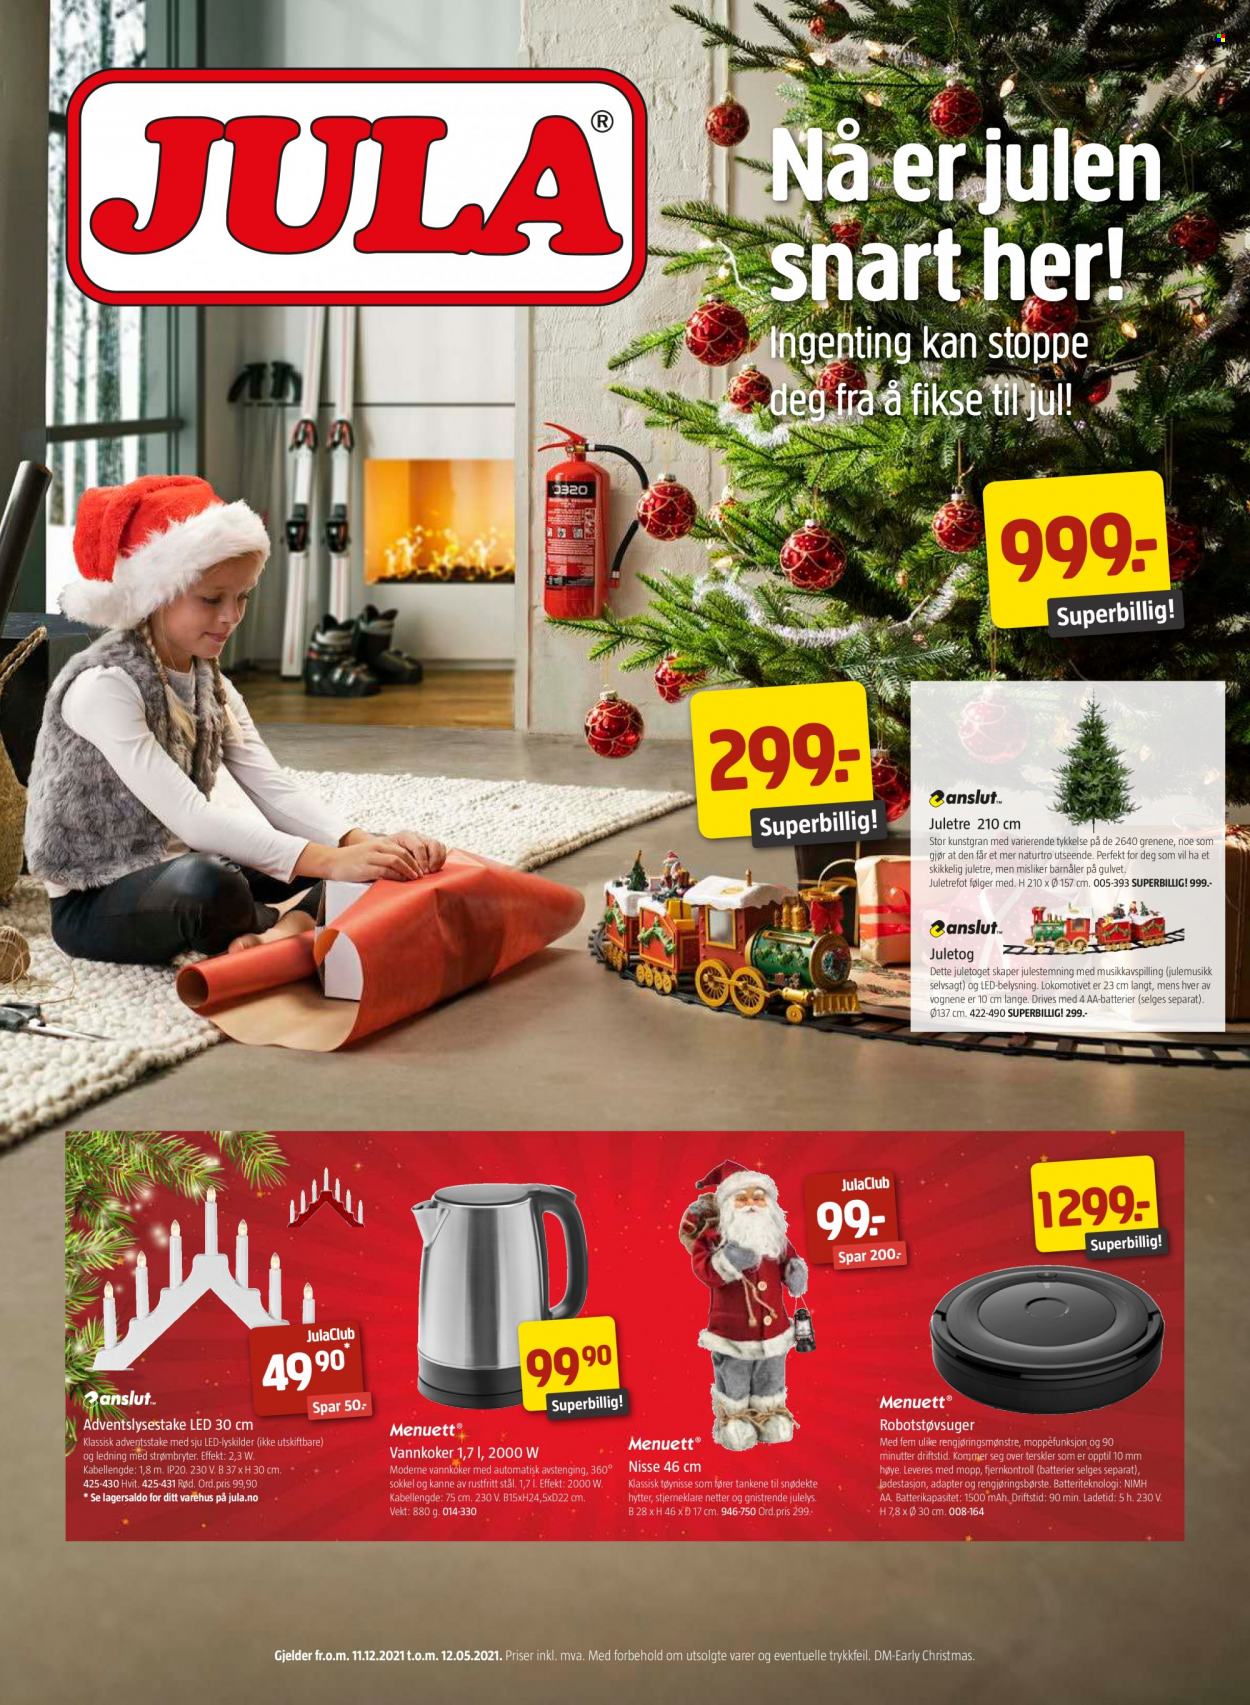 thumbnail - Kundeavis Jula - 13.11.2021 - 11.12.2021 - Produkter fra tilbudsaviser - vannkoker, robotstøvsuger, juletre. Side 1.